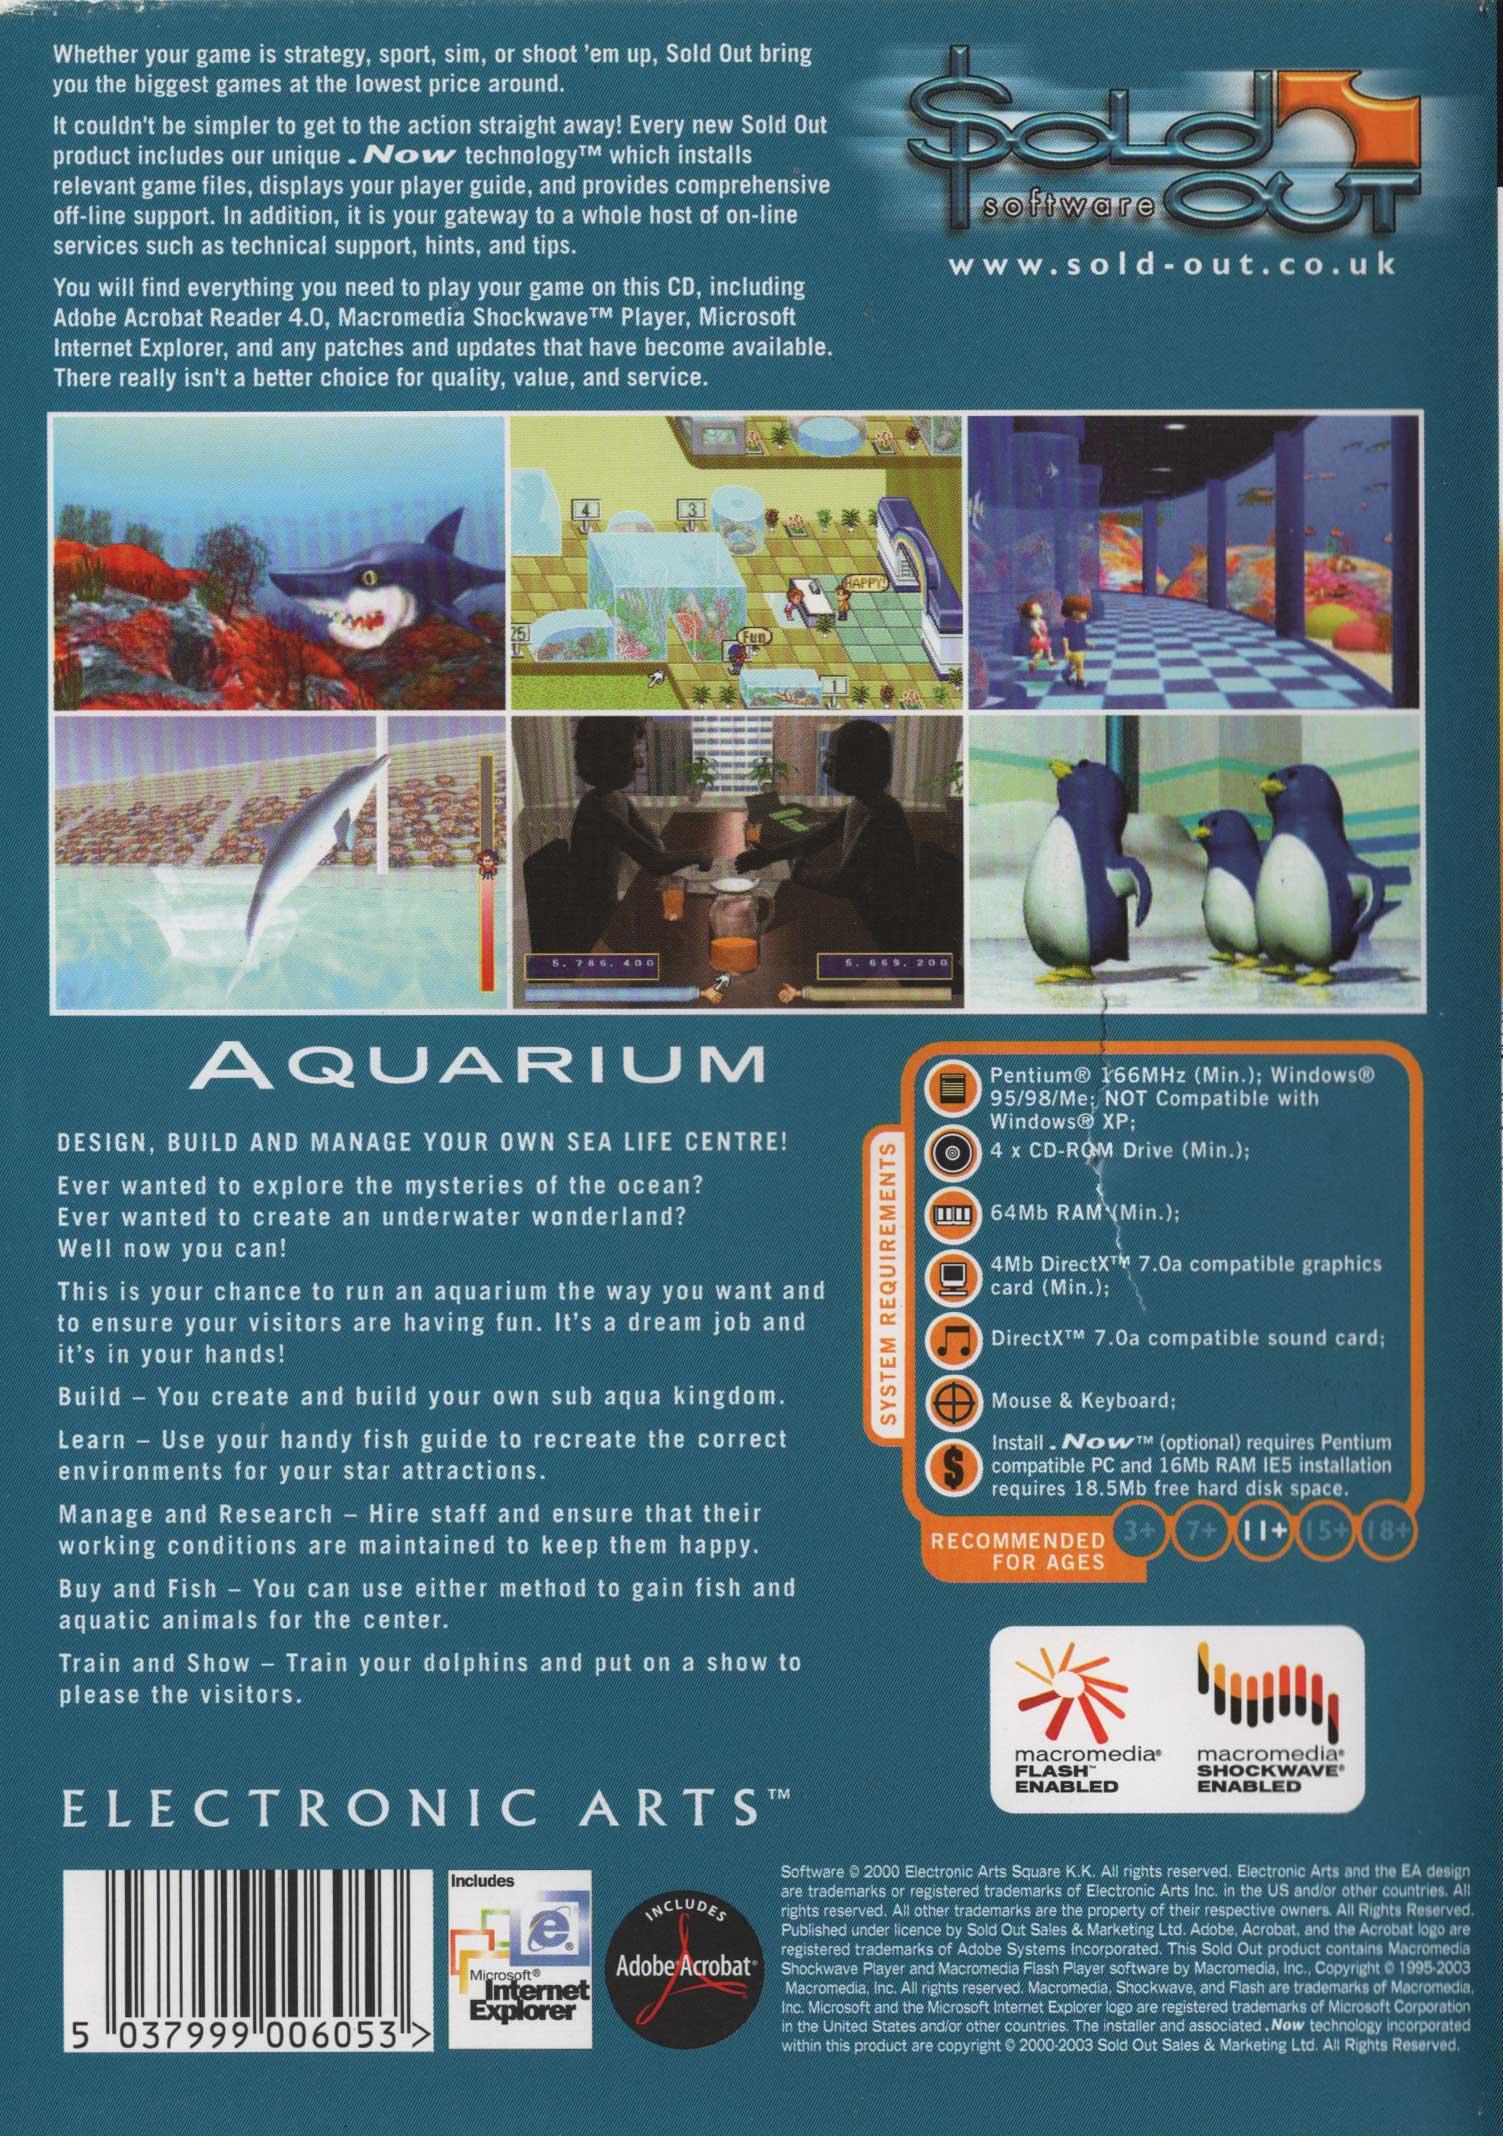 Aquarium - Classic Windows PC Game